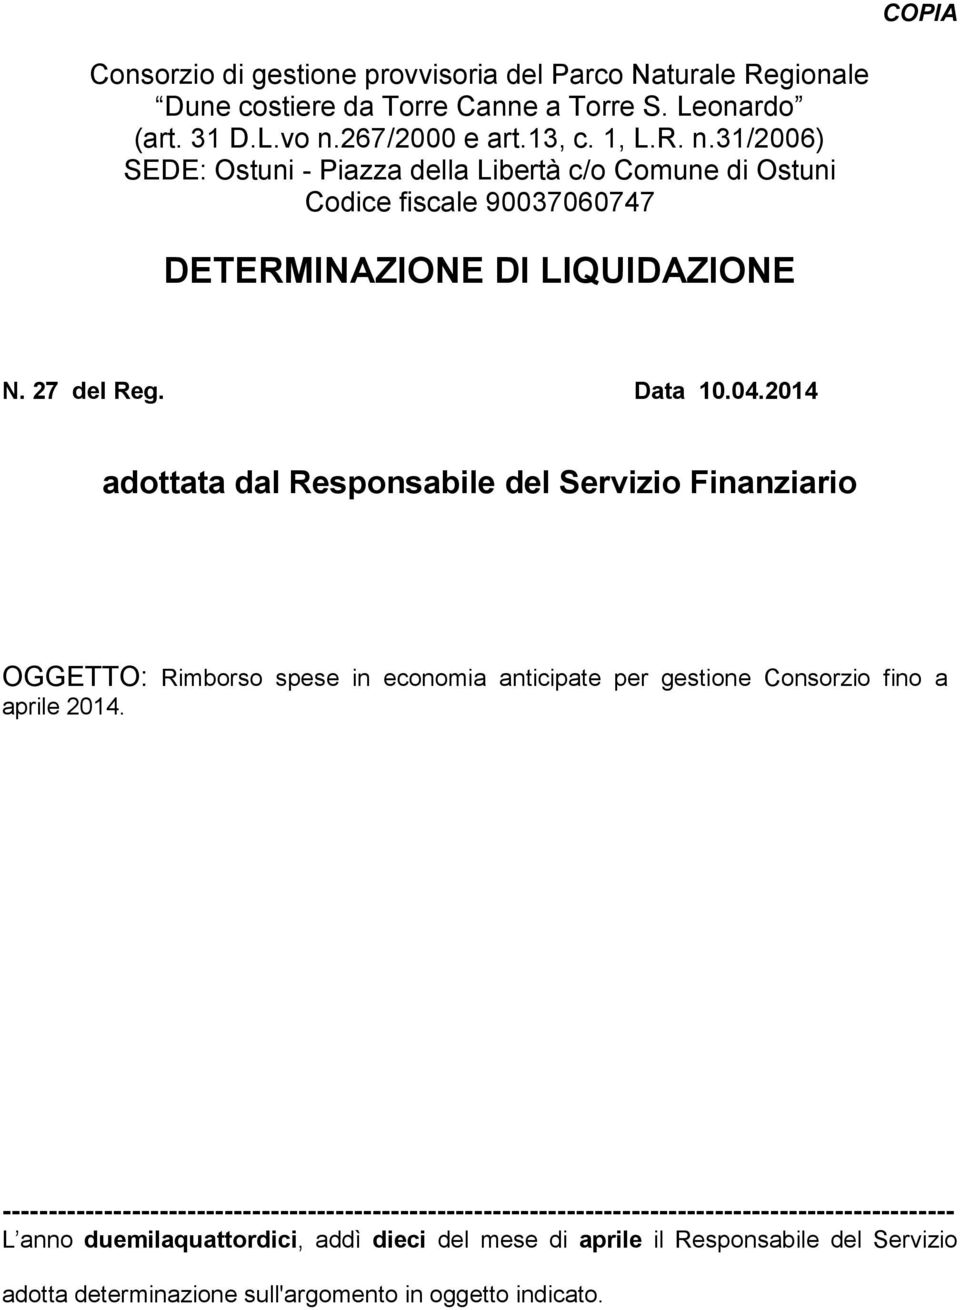 Data 10.04.2014 adottata dal Responsabile del Servizio Finanziario OGGETTO: Rimborso spese in economia anticipate per gestione Consorzio fino a aprile 2014.